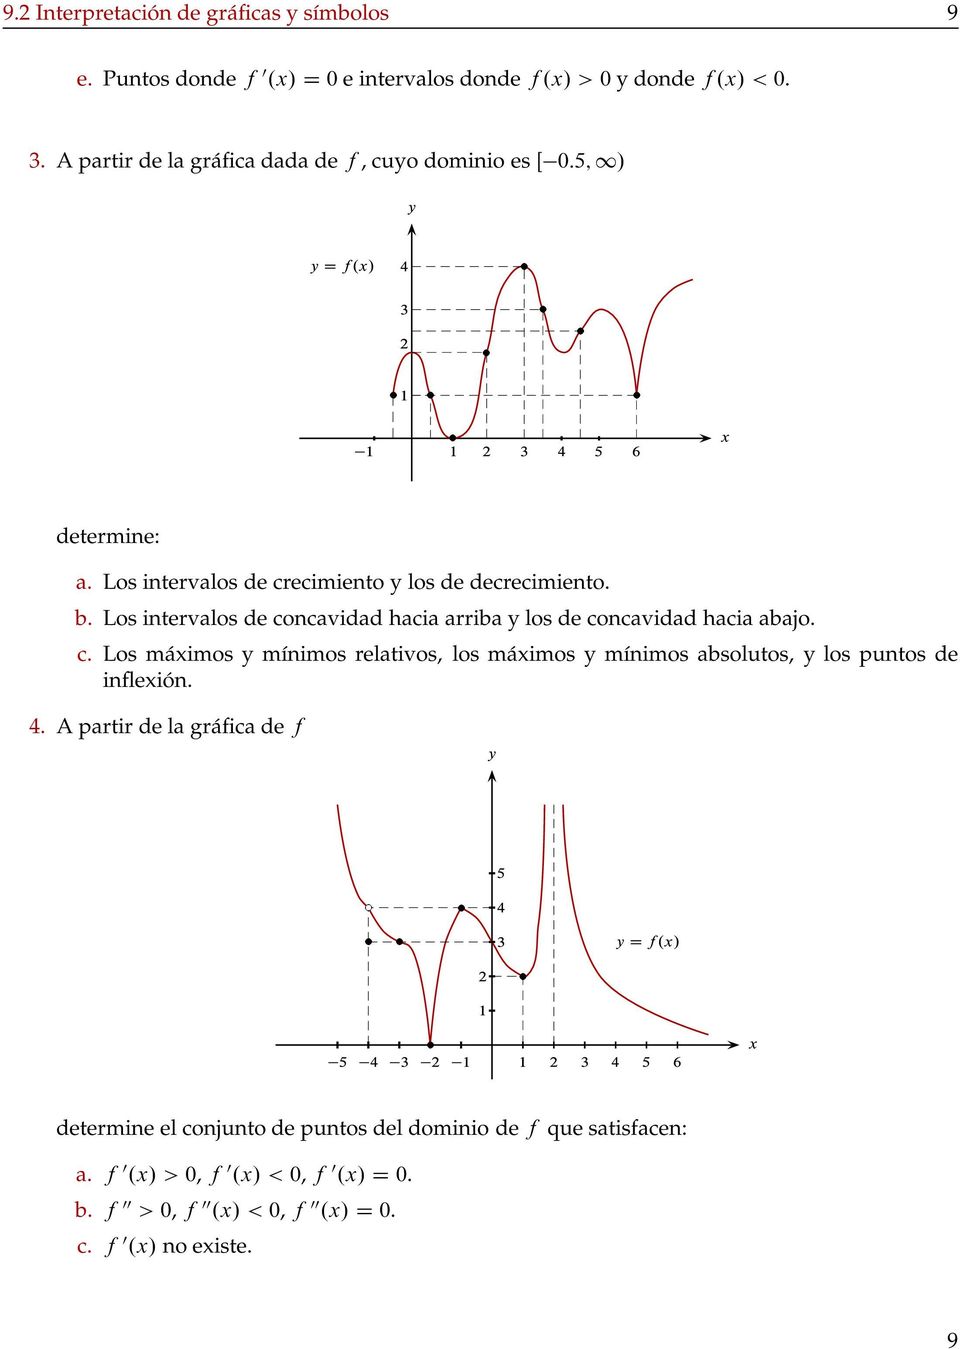 Los intervalos de concavidad hacia arriba los de concavidad hacia abajo. c. Los máimos mínimos relativos, los máimos mínimos absolutos, los puntos de infleión.